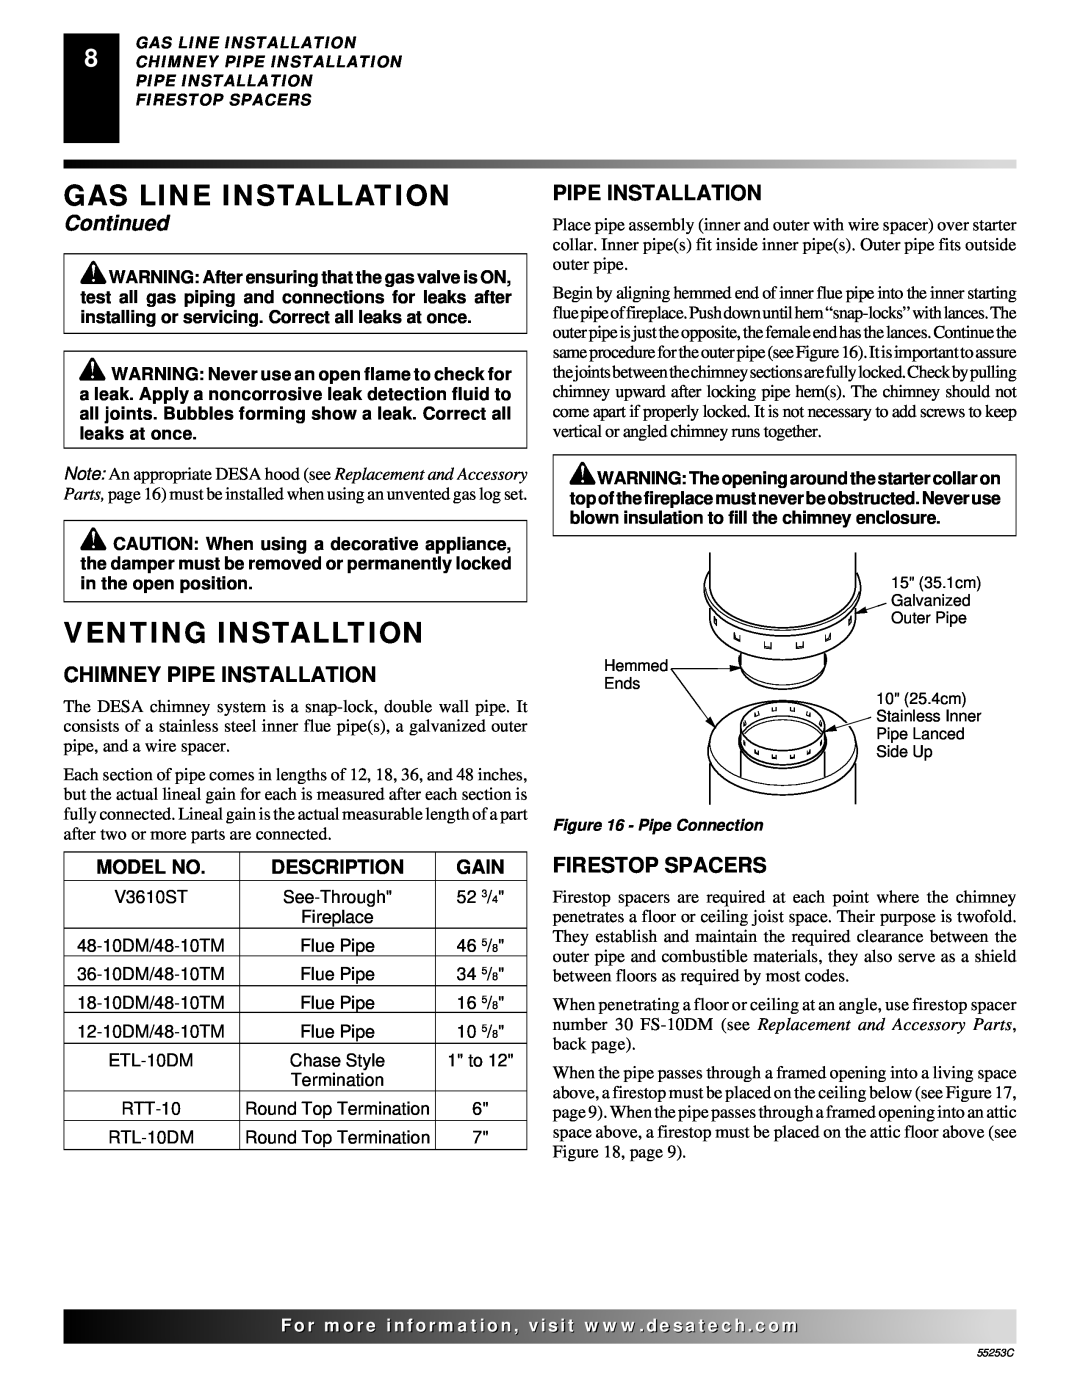 Desa V3610ST manual Venting Installtion, Gas Line Installation, Continued, Chimney Pipe Installation, Firestop Spacers 